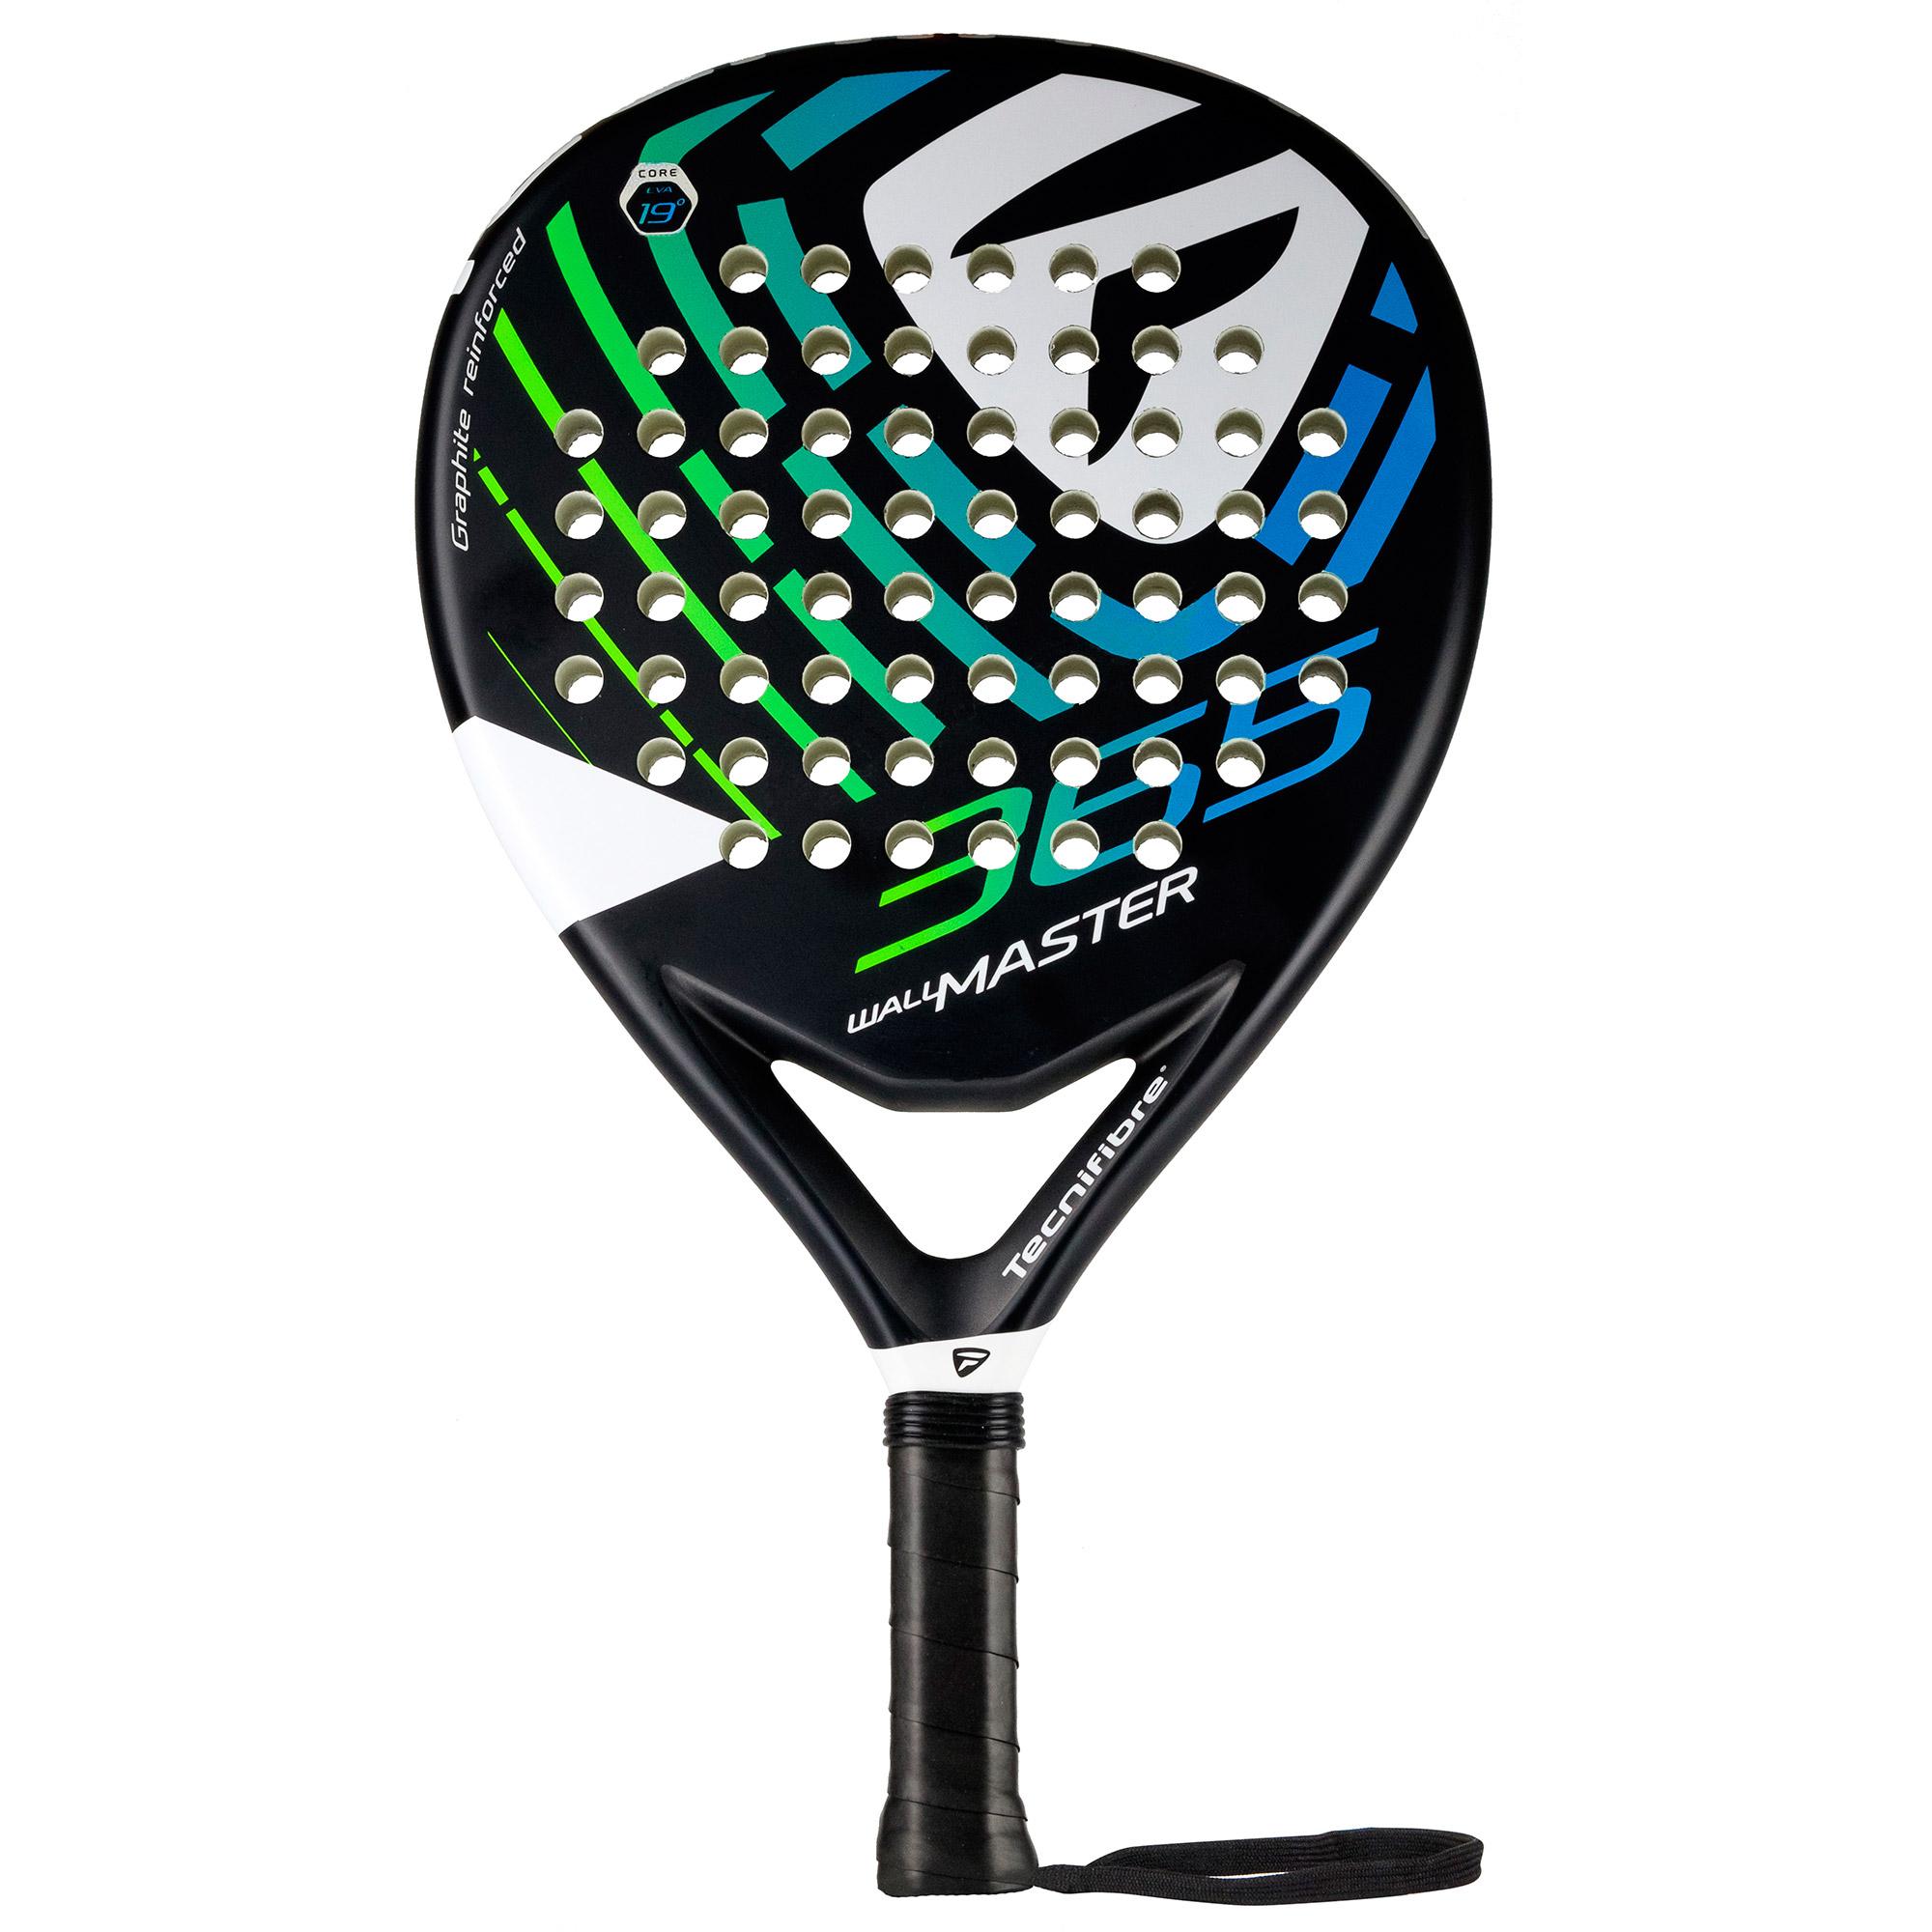 Tecnifibre Wall Master 365 Padel Racket - Black - Tennisnuts.com